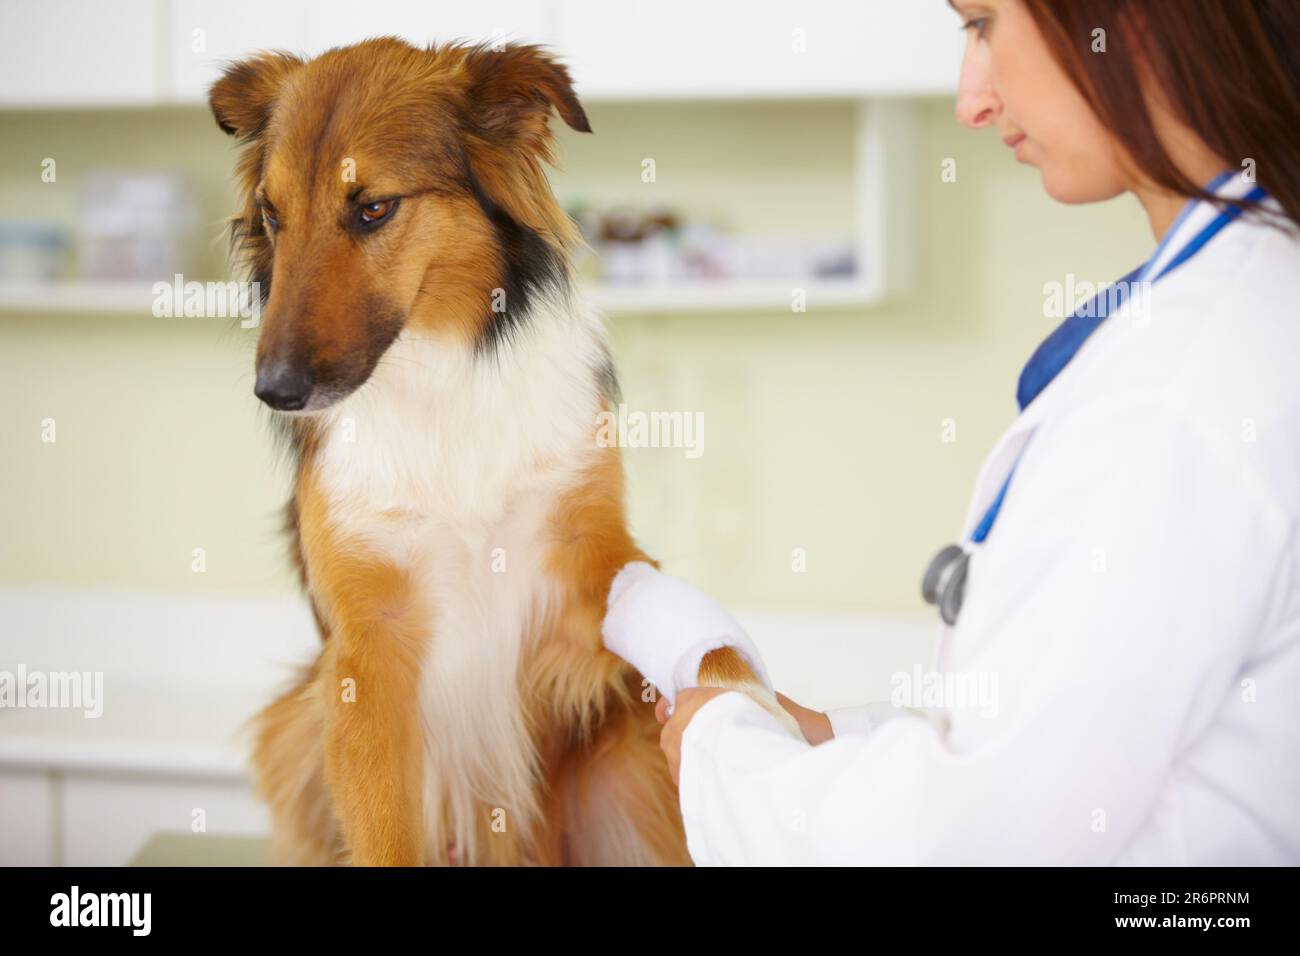 Arzt, Verband oder Hund in der Tierklinik bei einer medizinischen Notfallinspektion oder Unfall. Tierarzt, helfender oder verletzter, grober Collie Haustier Stockfoto